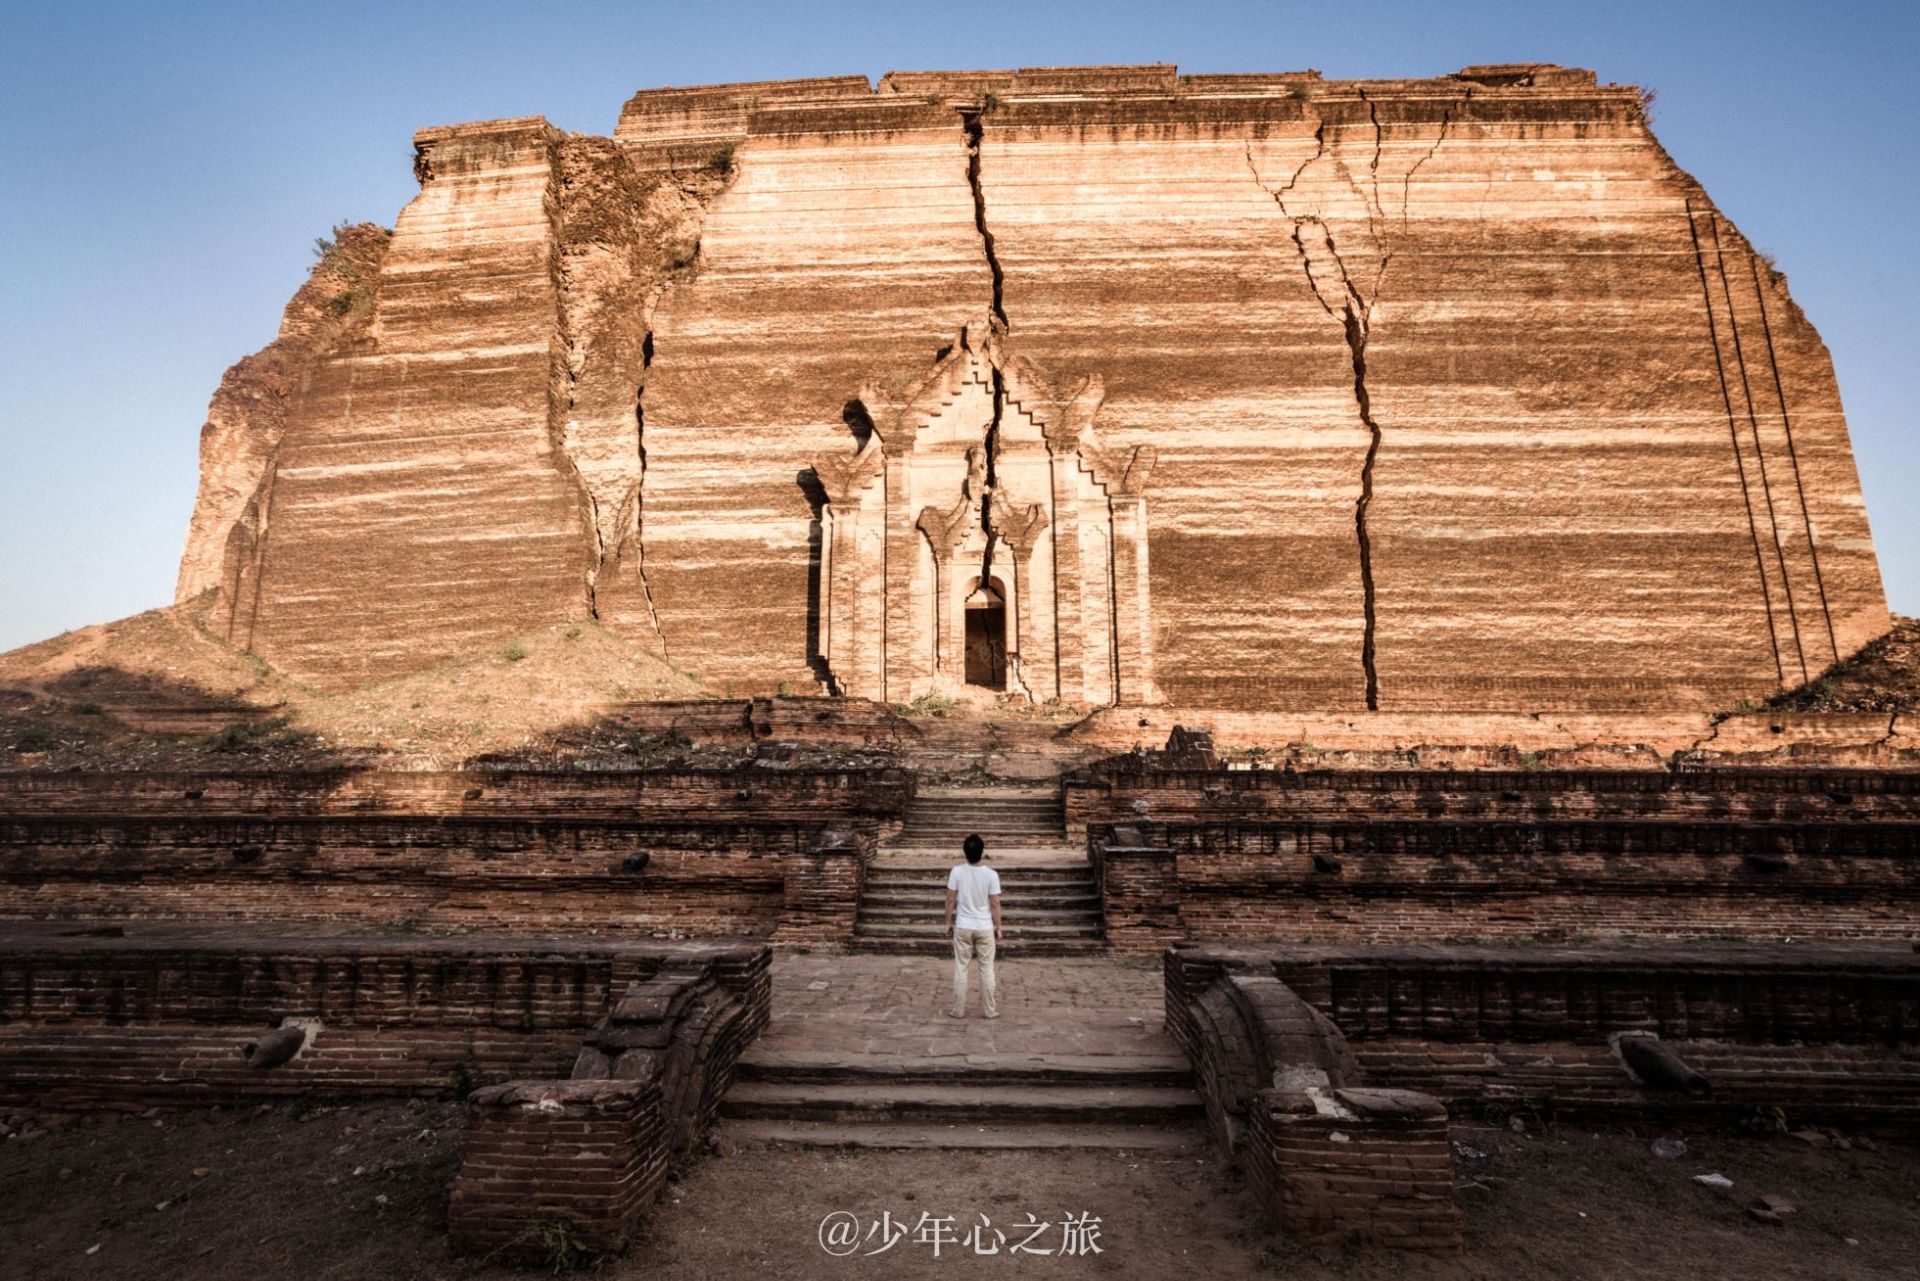 曼德勒敏贡佛塔 | 世界上最大的砖制建筑 ✨✨✨ 缅甸被誉为“千塔佛国”，在这个国家，有数不尽的佛塔